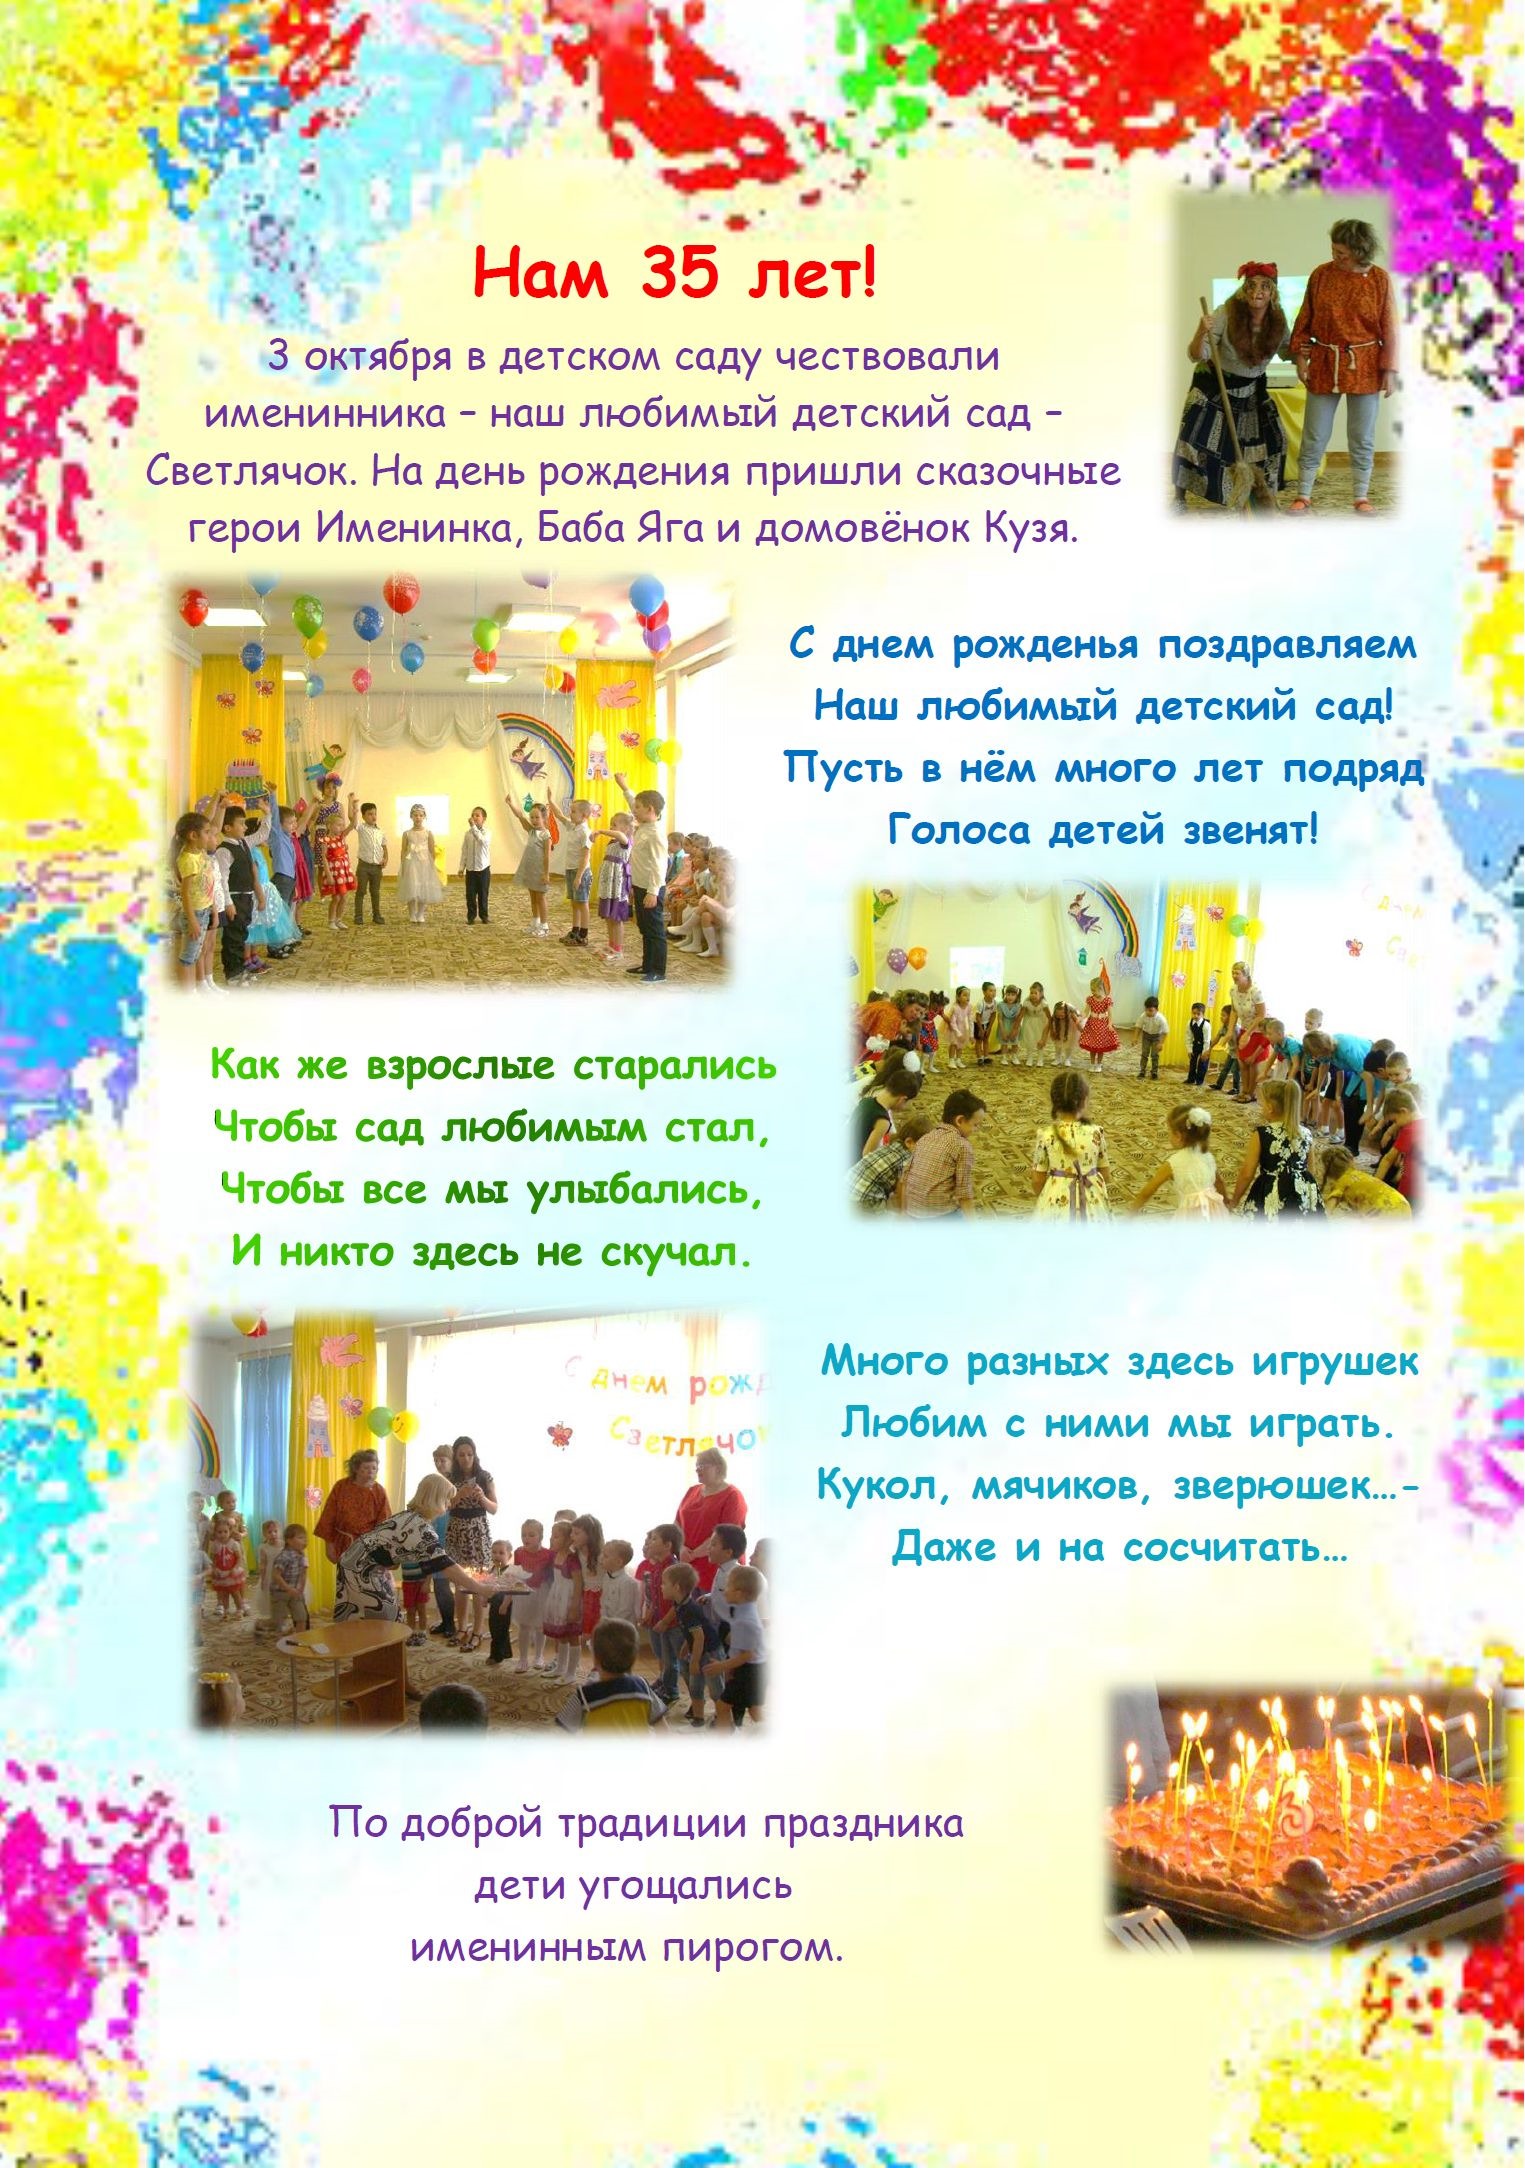 Поздравление с юбилеем детского сада